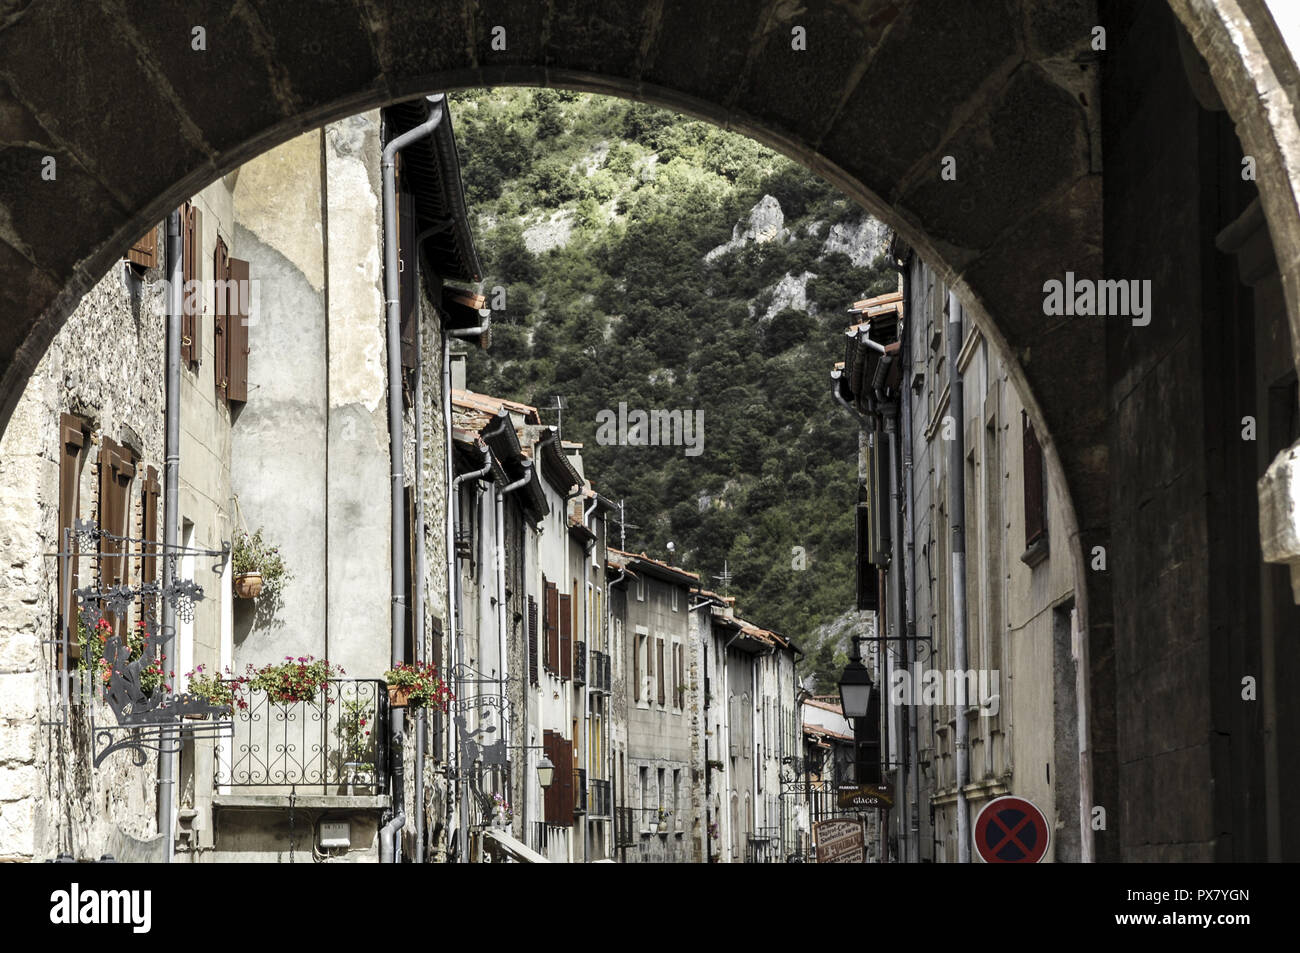 Villefranche de Conflent, city view, France, Pyrenees Stock Photo